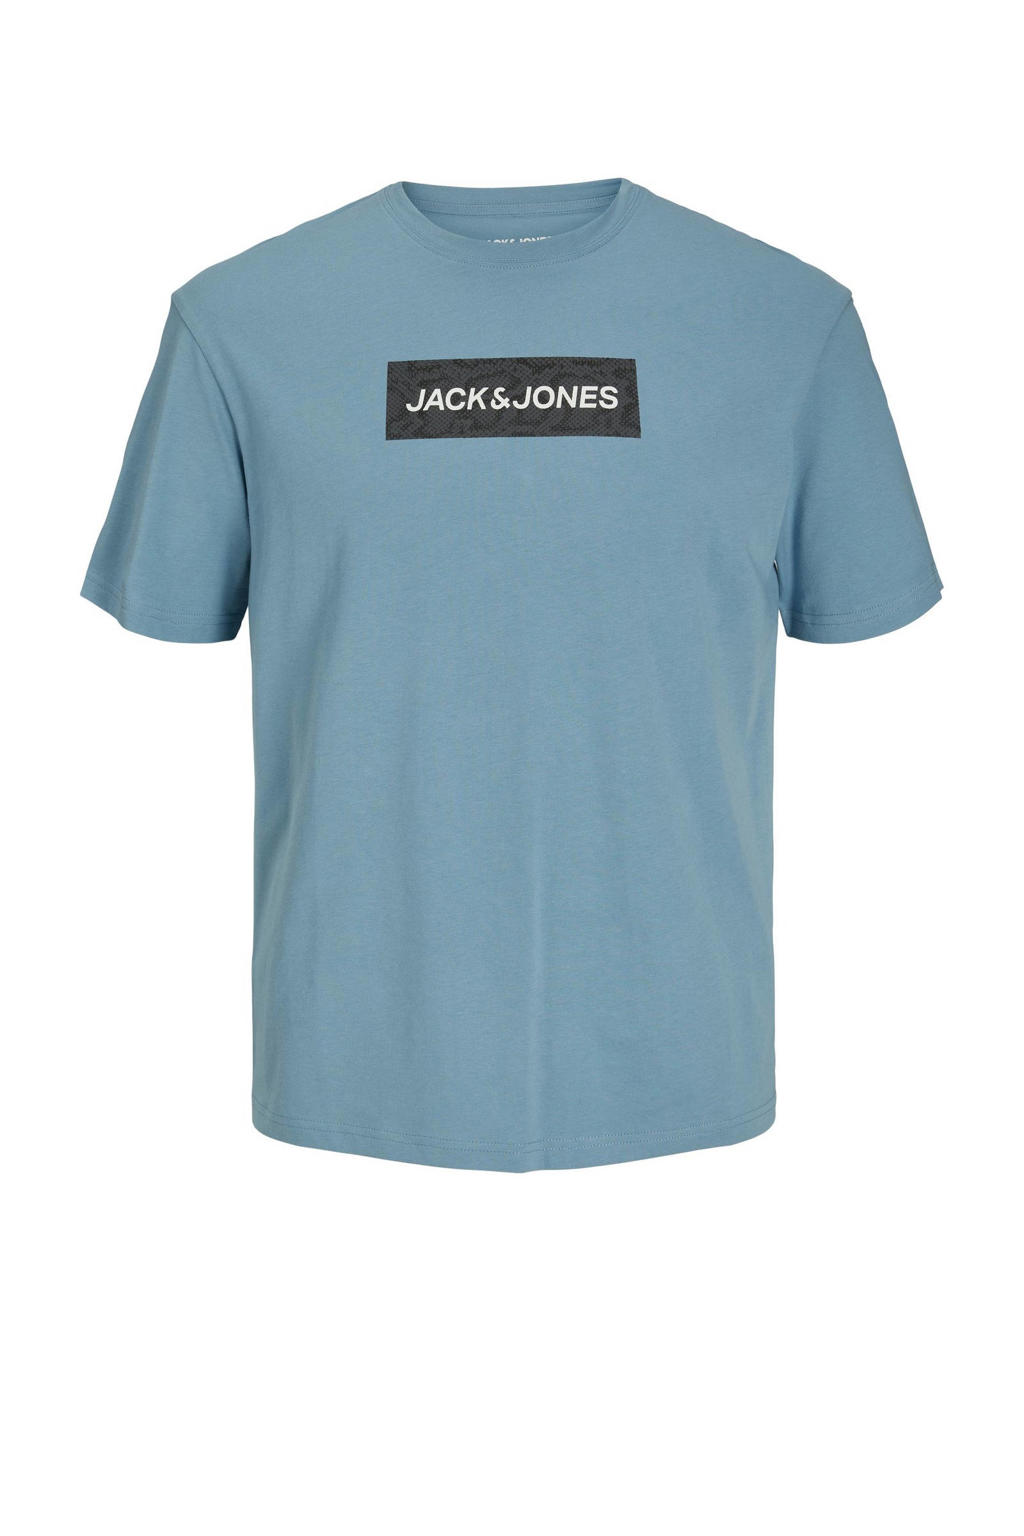 Lichtblauwe jongens JACK & JONES JUNIOR T-shirt van katoen met logo dessin, korte mouwen en ronde hals